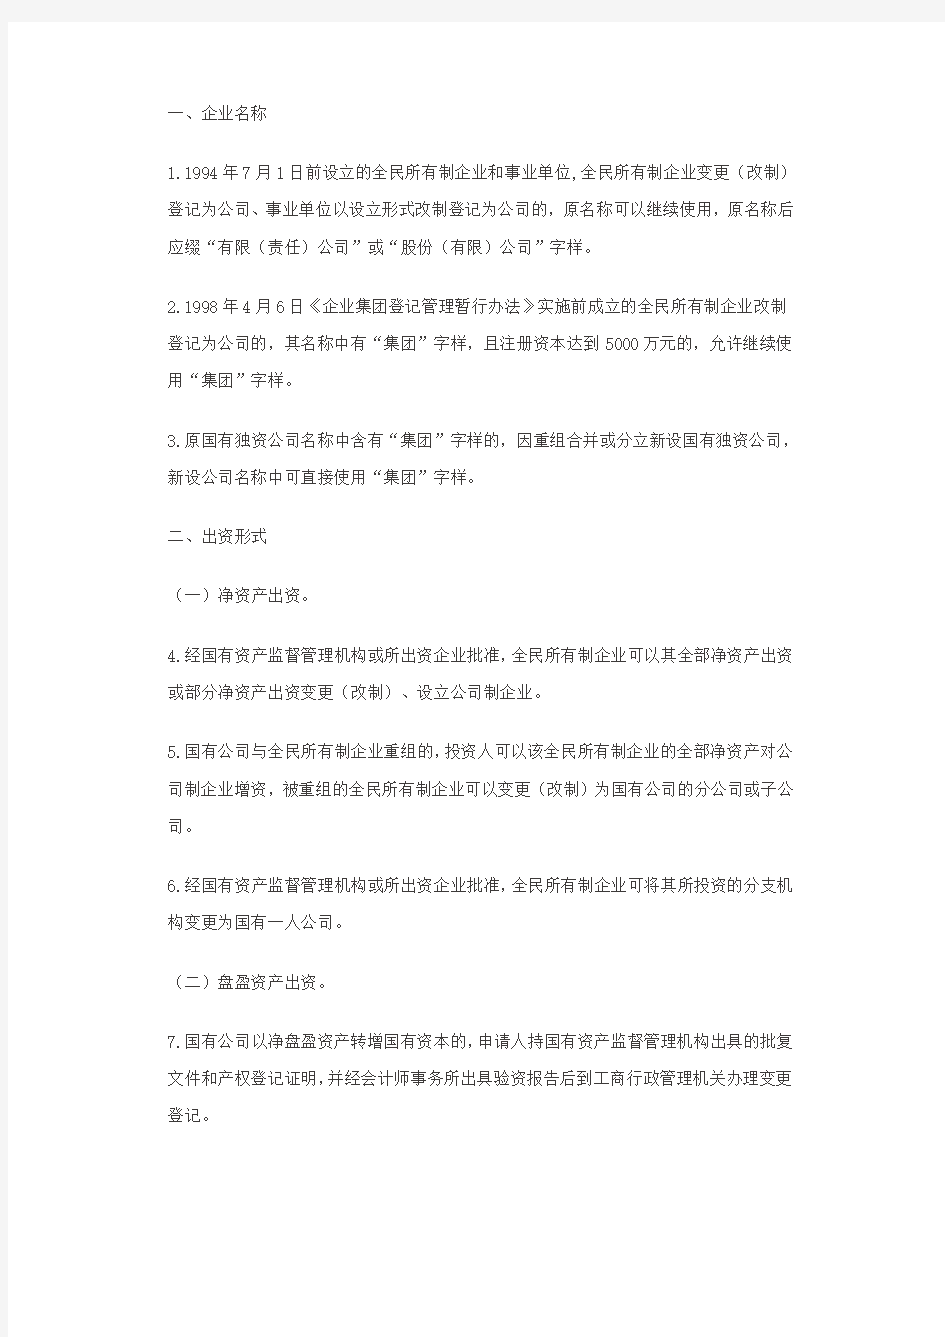 北京市国有企业改制重组登记注册若干意见